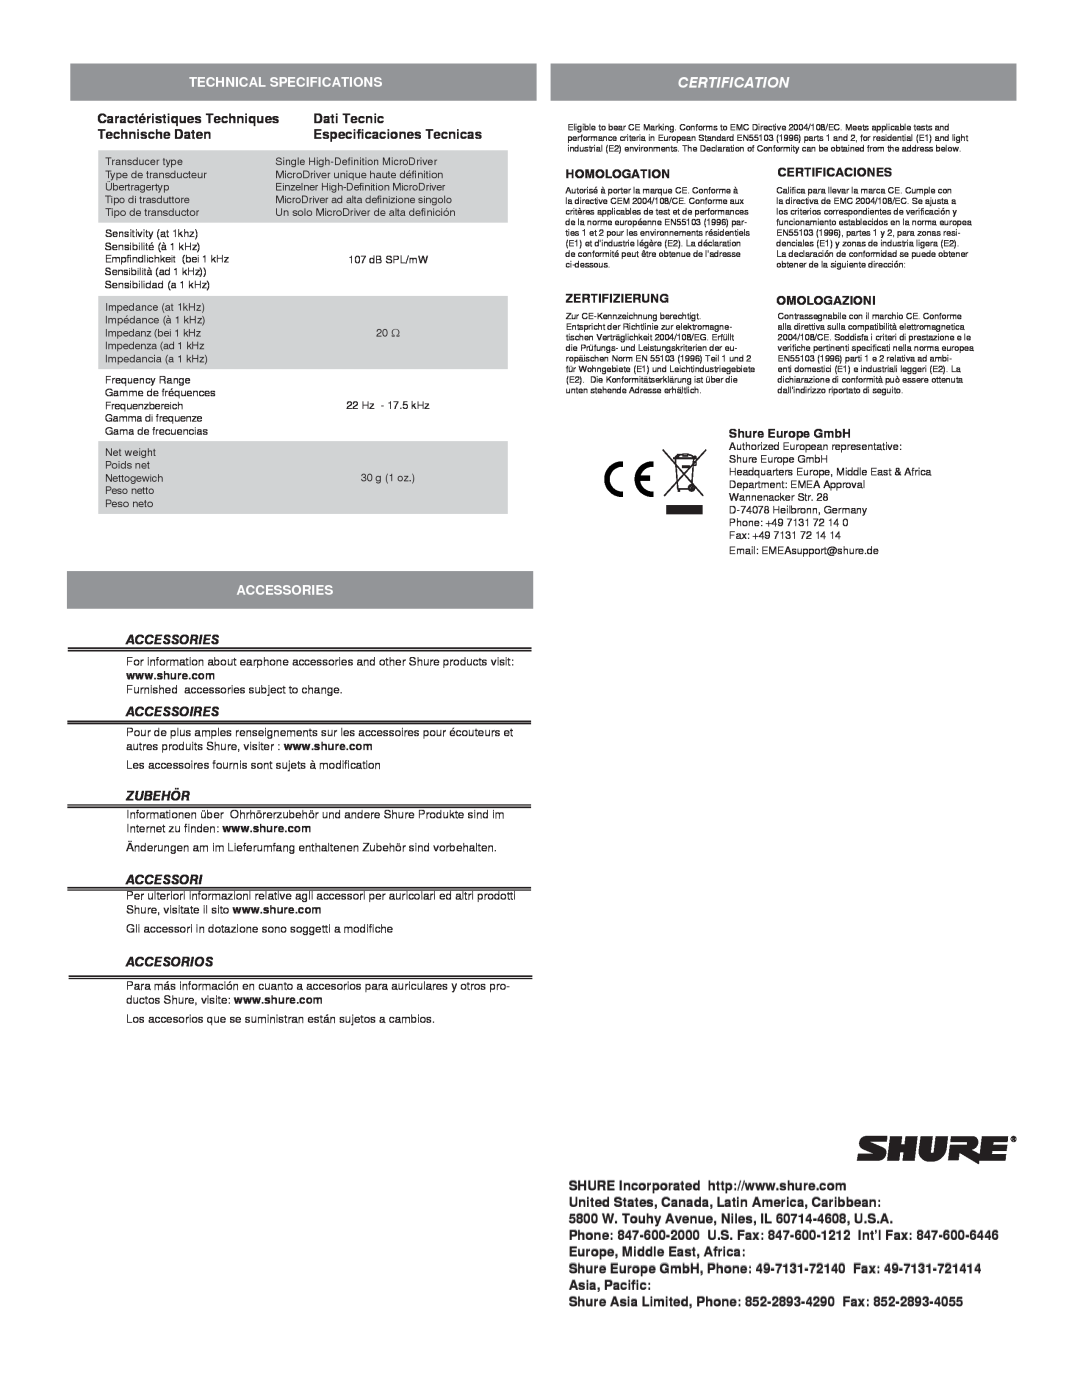 Shure MLP_SE215 Technical Specifications, Caractéristiques Techniques, Dati Tecnic, Technische Daten, Accessories, Zubehör 